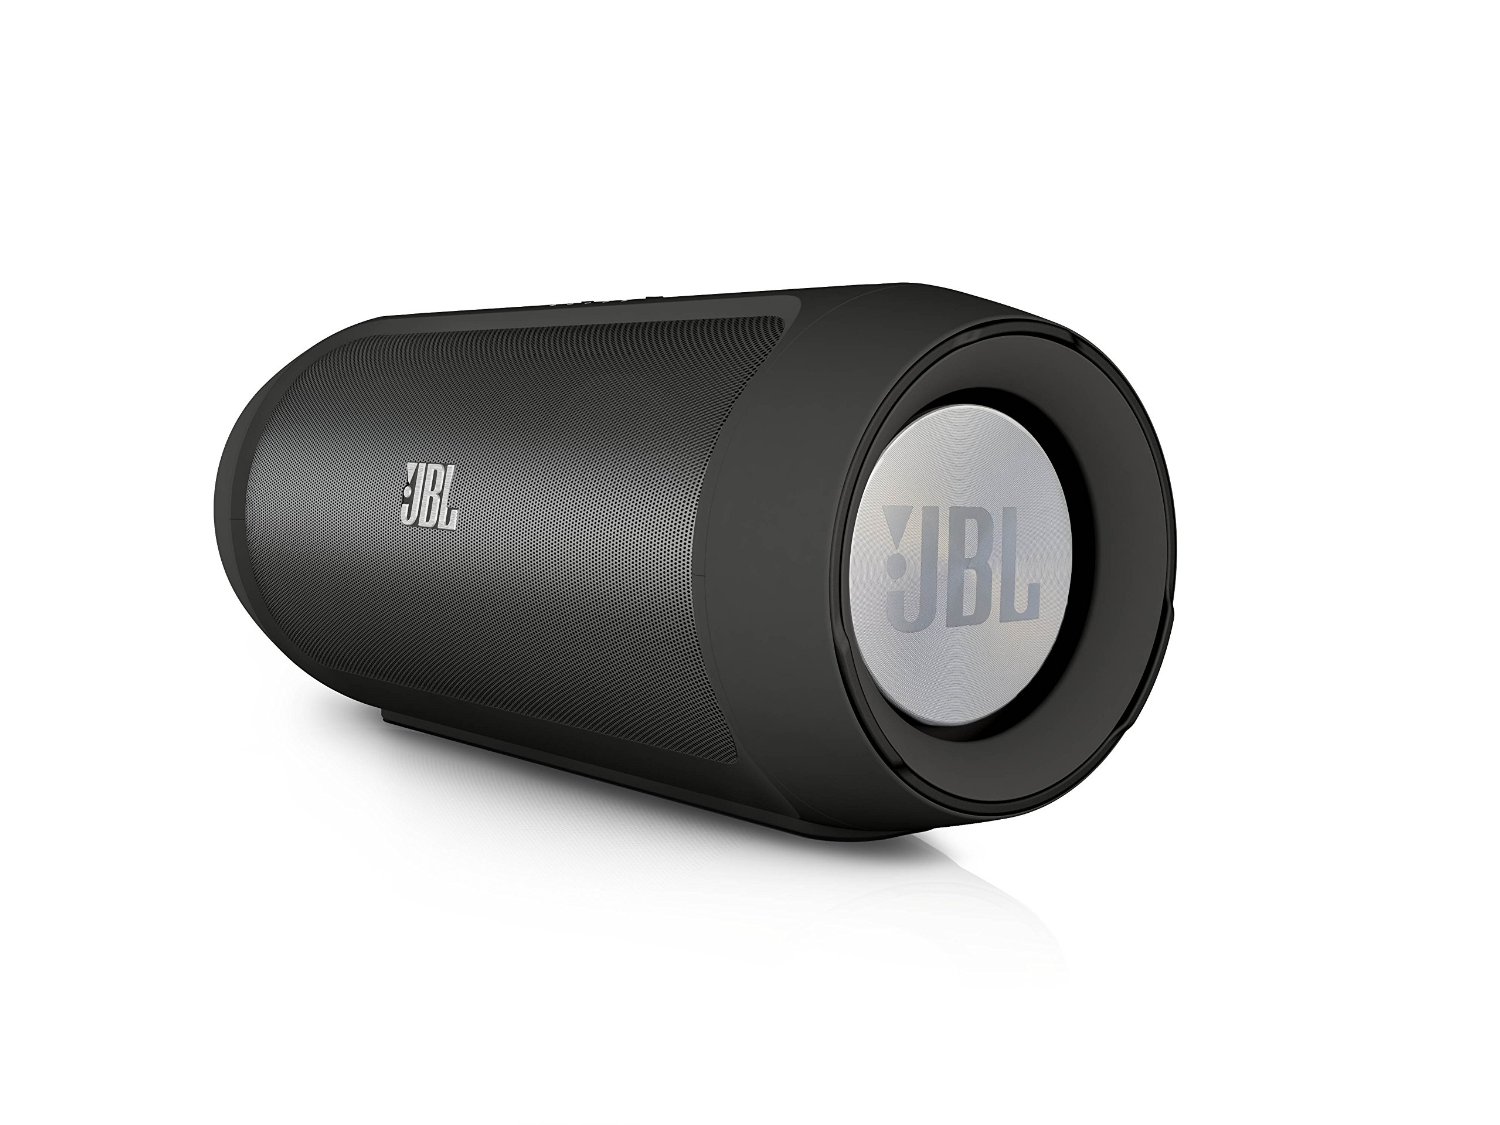 Underlegen butik præsentation JBL Charge 2 Review | SoundVisionReview